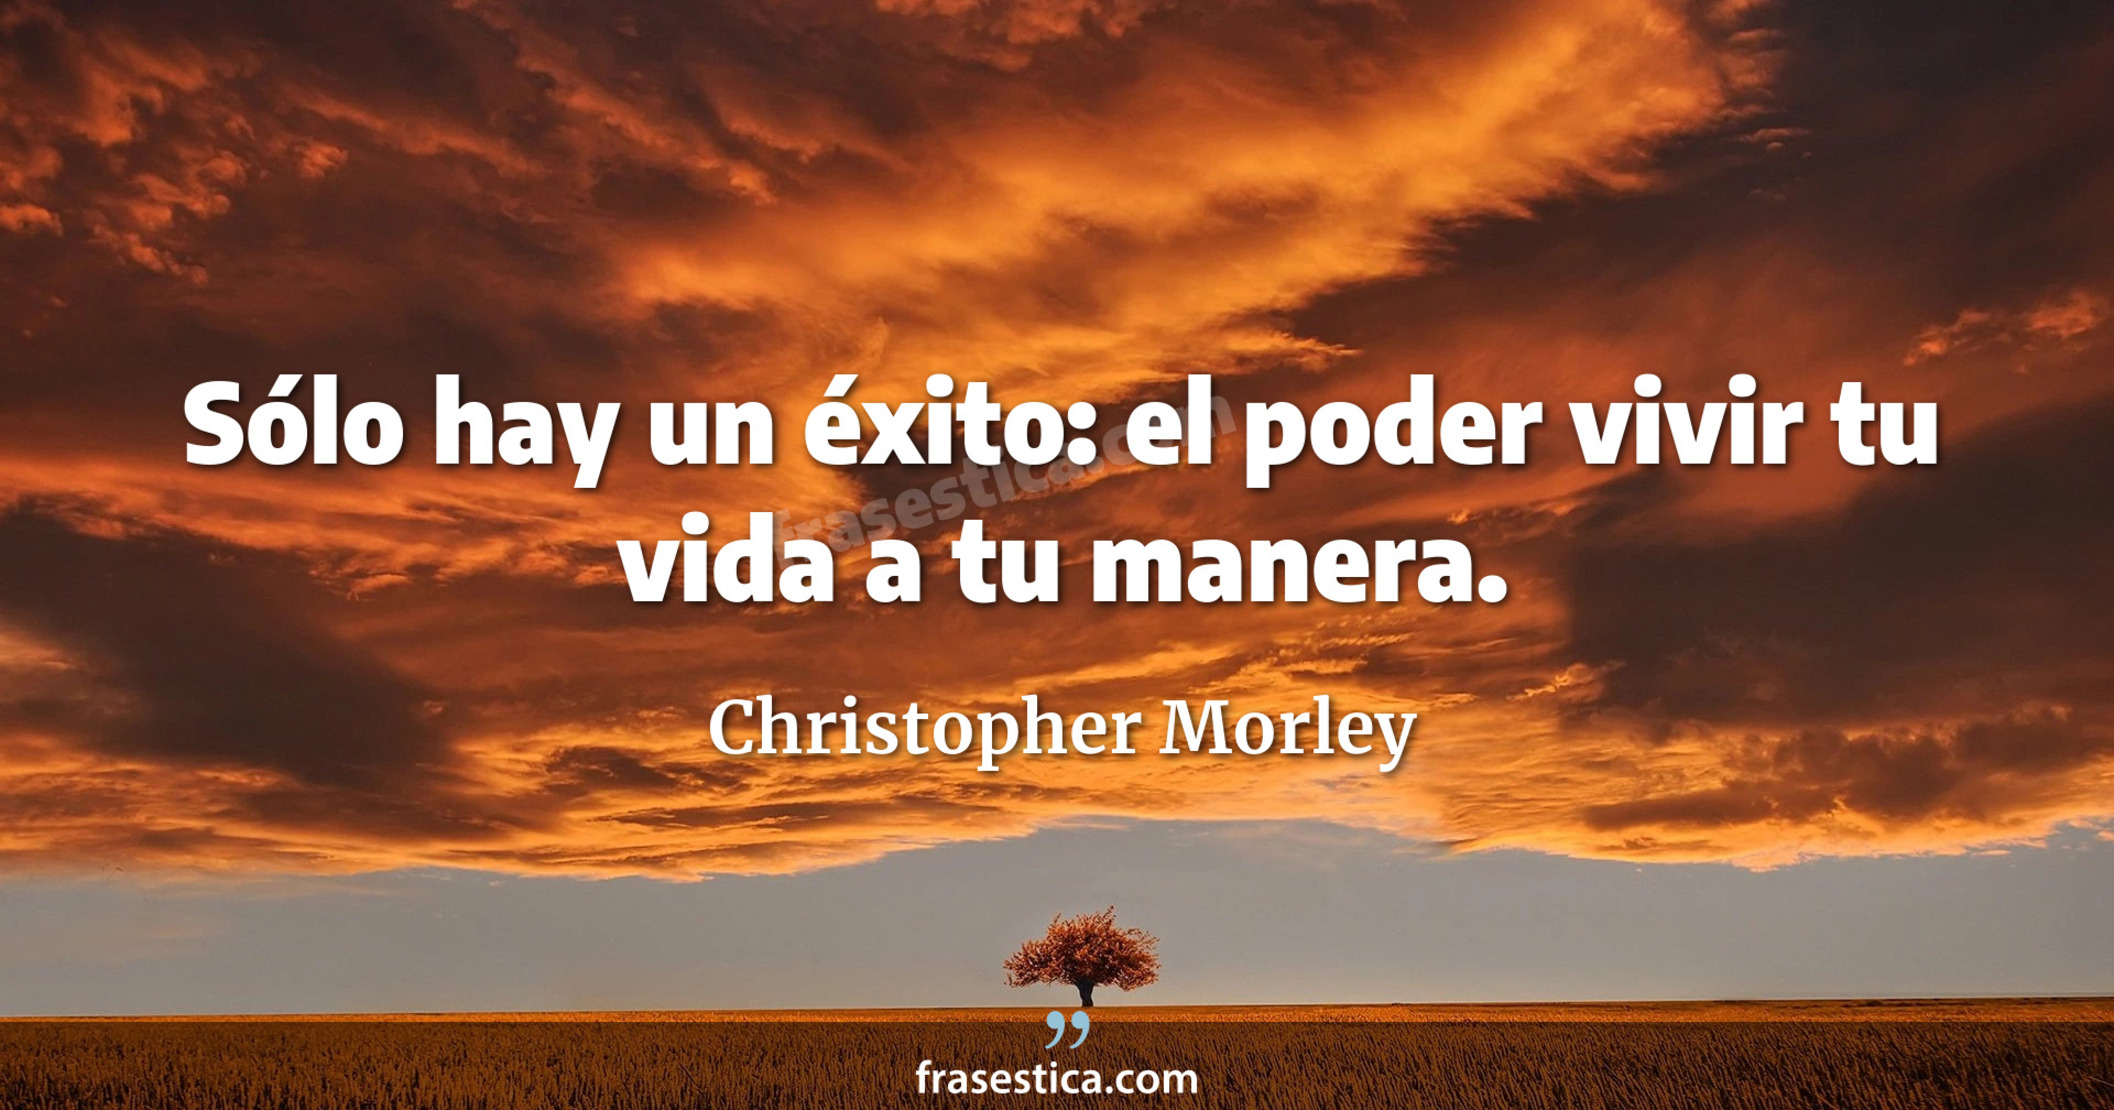 Sólo hay un éxito: el poder vivir tu vida a tu manera. - Christopher Morley